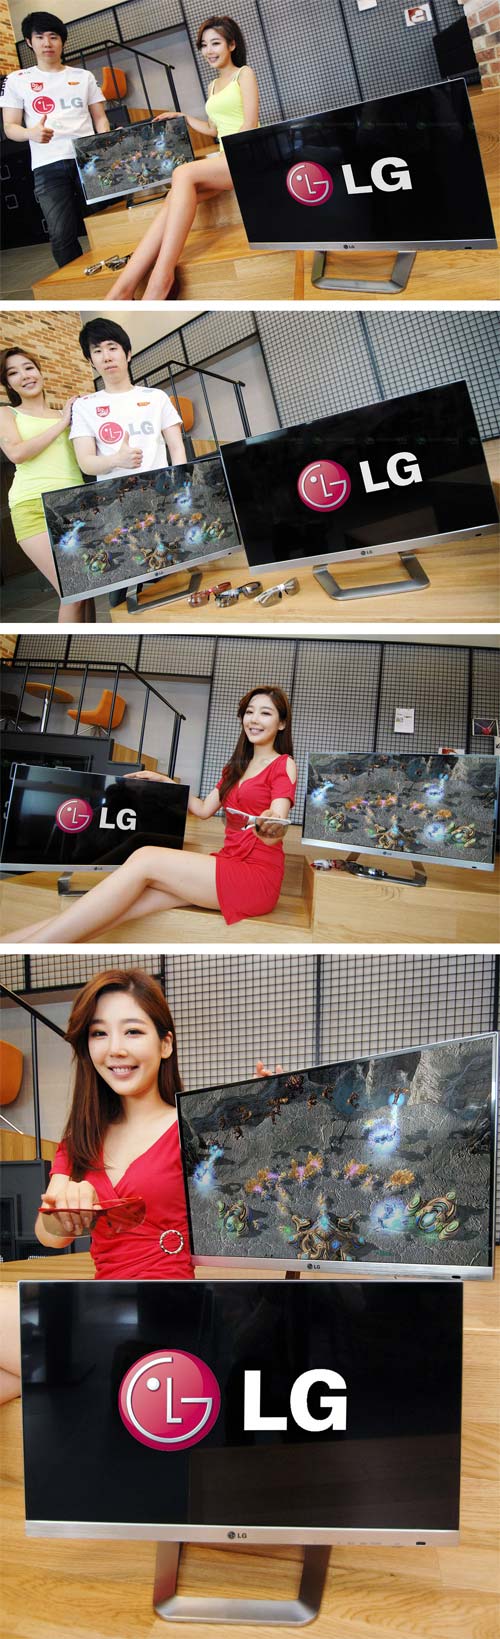 Две девахи и корейский паренёк показывают монитор LG DM2792D